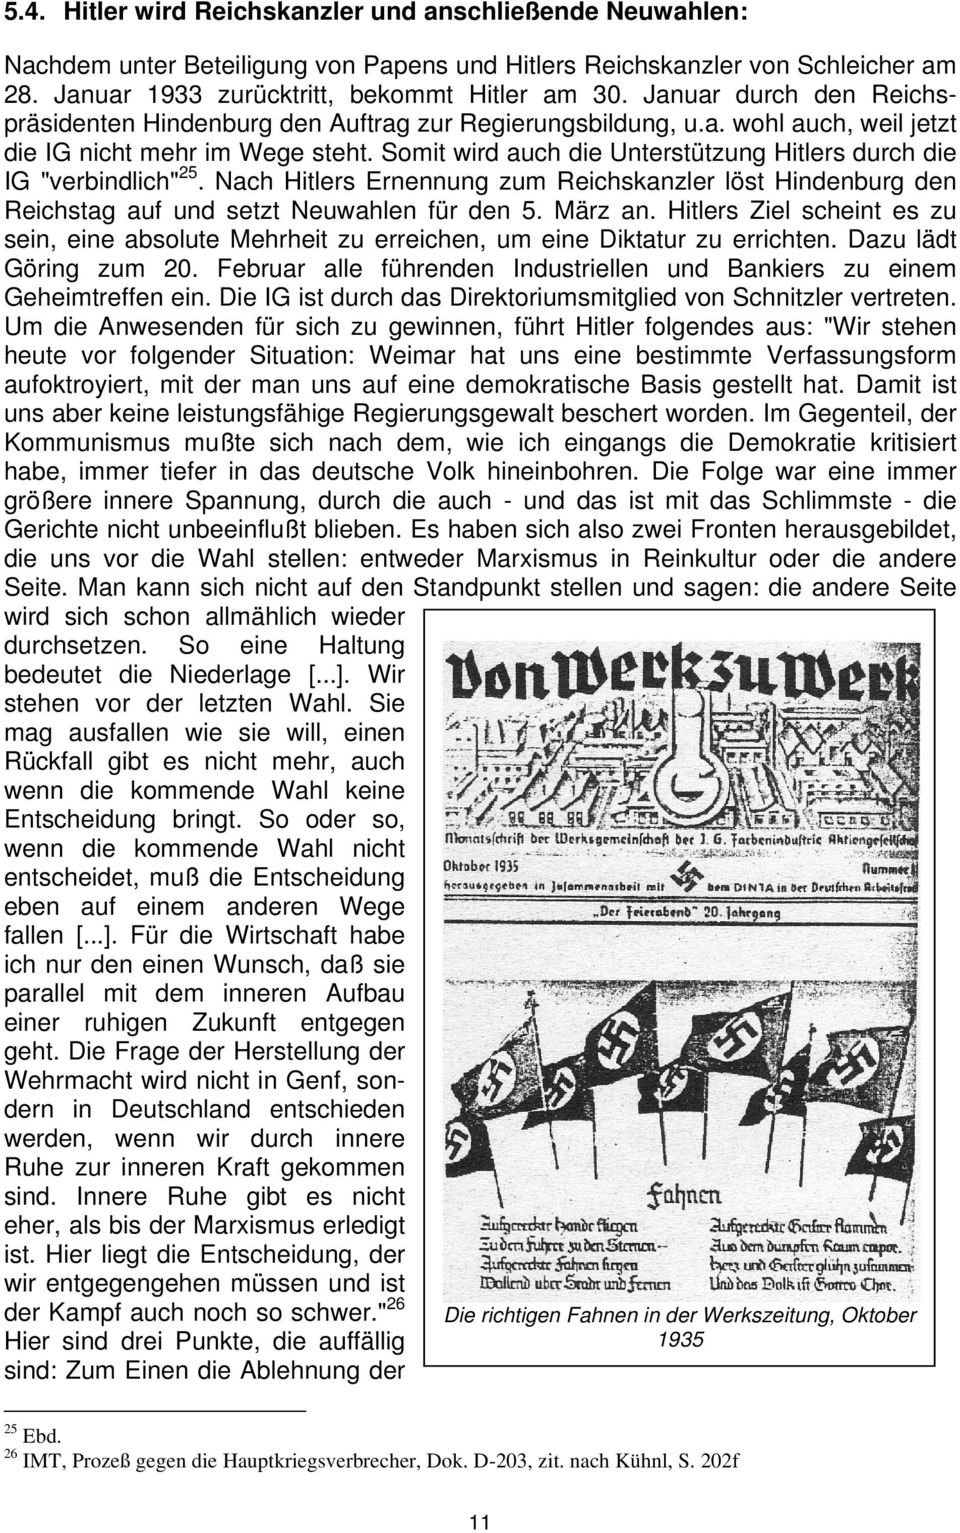 Somit wird auch die Unterstützung Hitlers durch die IG "verbindlich" 25. Nach Hitlers Ernennung zum Reichskanzler löst Hindenburg den Reichstag auf und setzt Neuwahlen für den 5. März an.